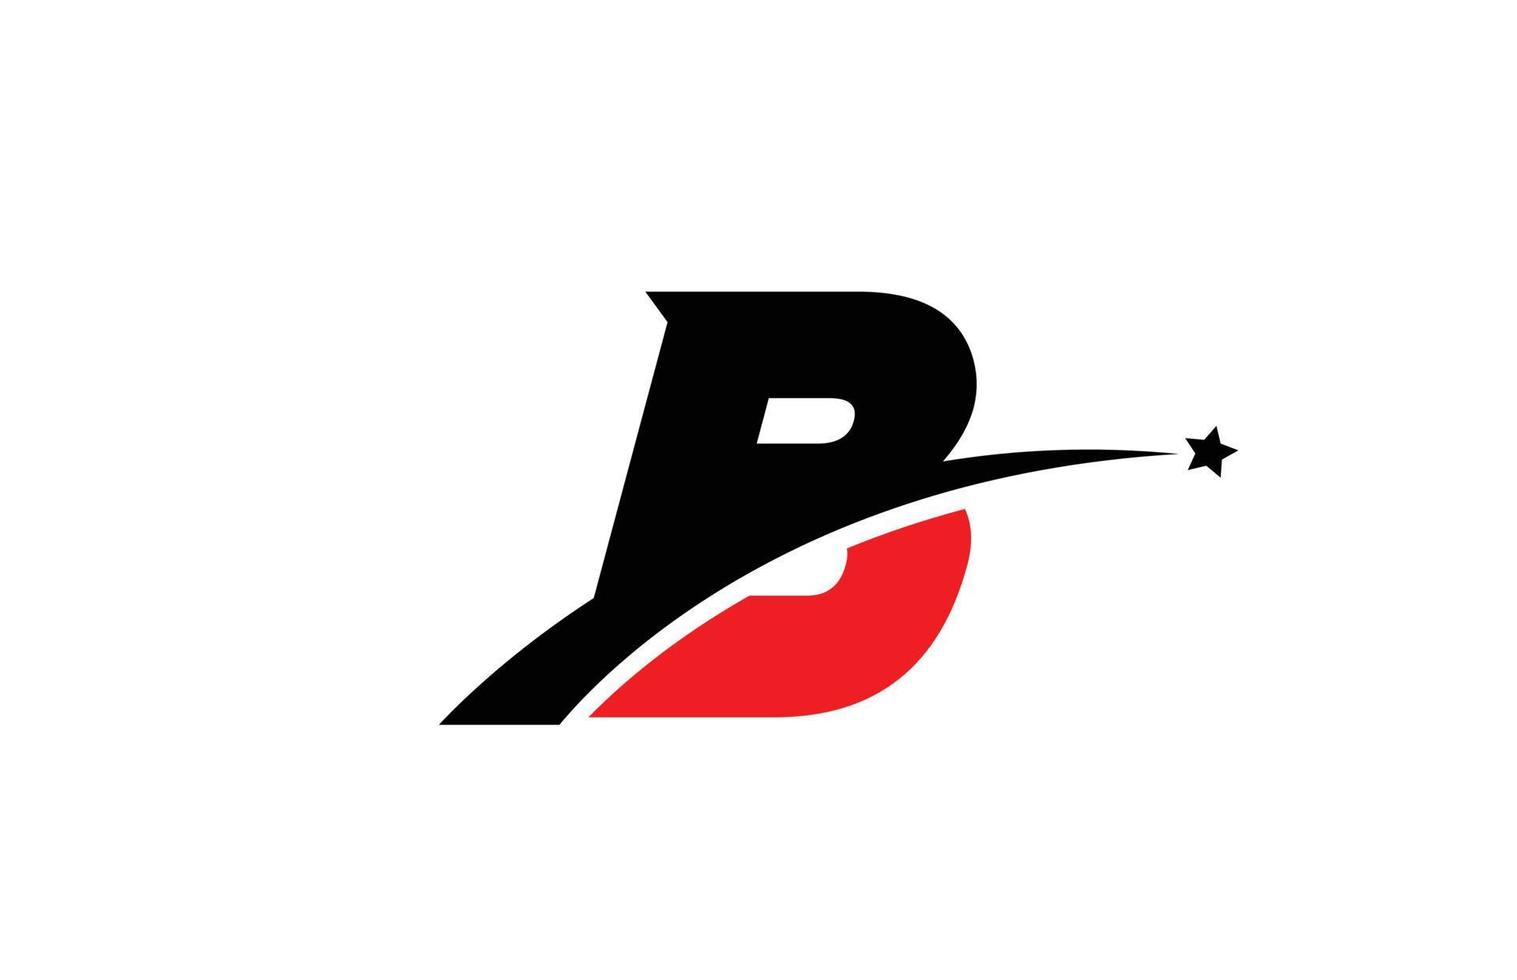 b design de ícone do logotipo da letra do alfabeto preto vermelho com swoosh e estrela. modelo criativo para negócios e empresa vetor